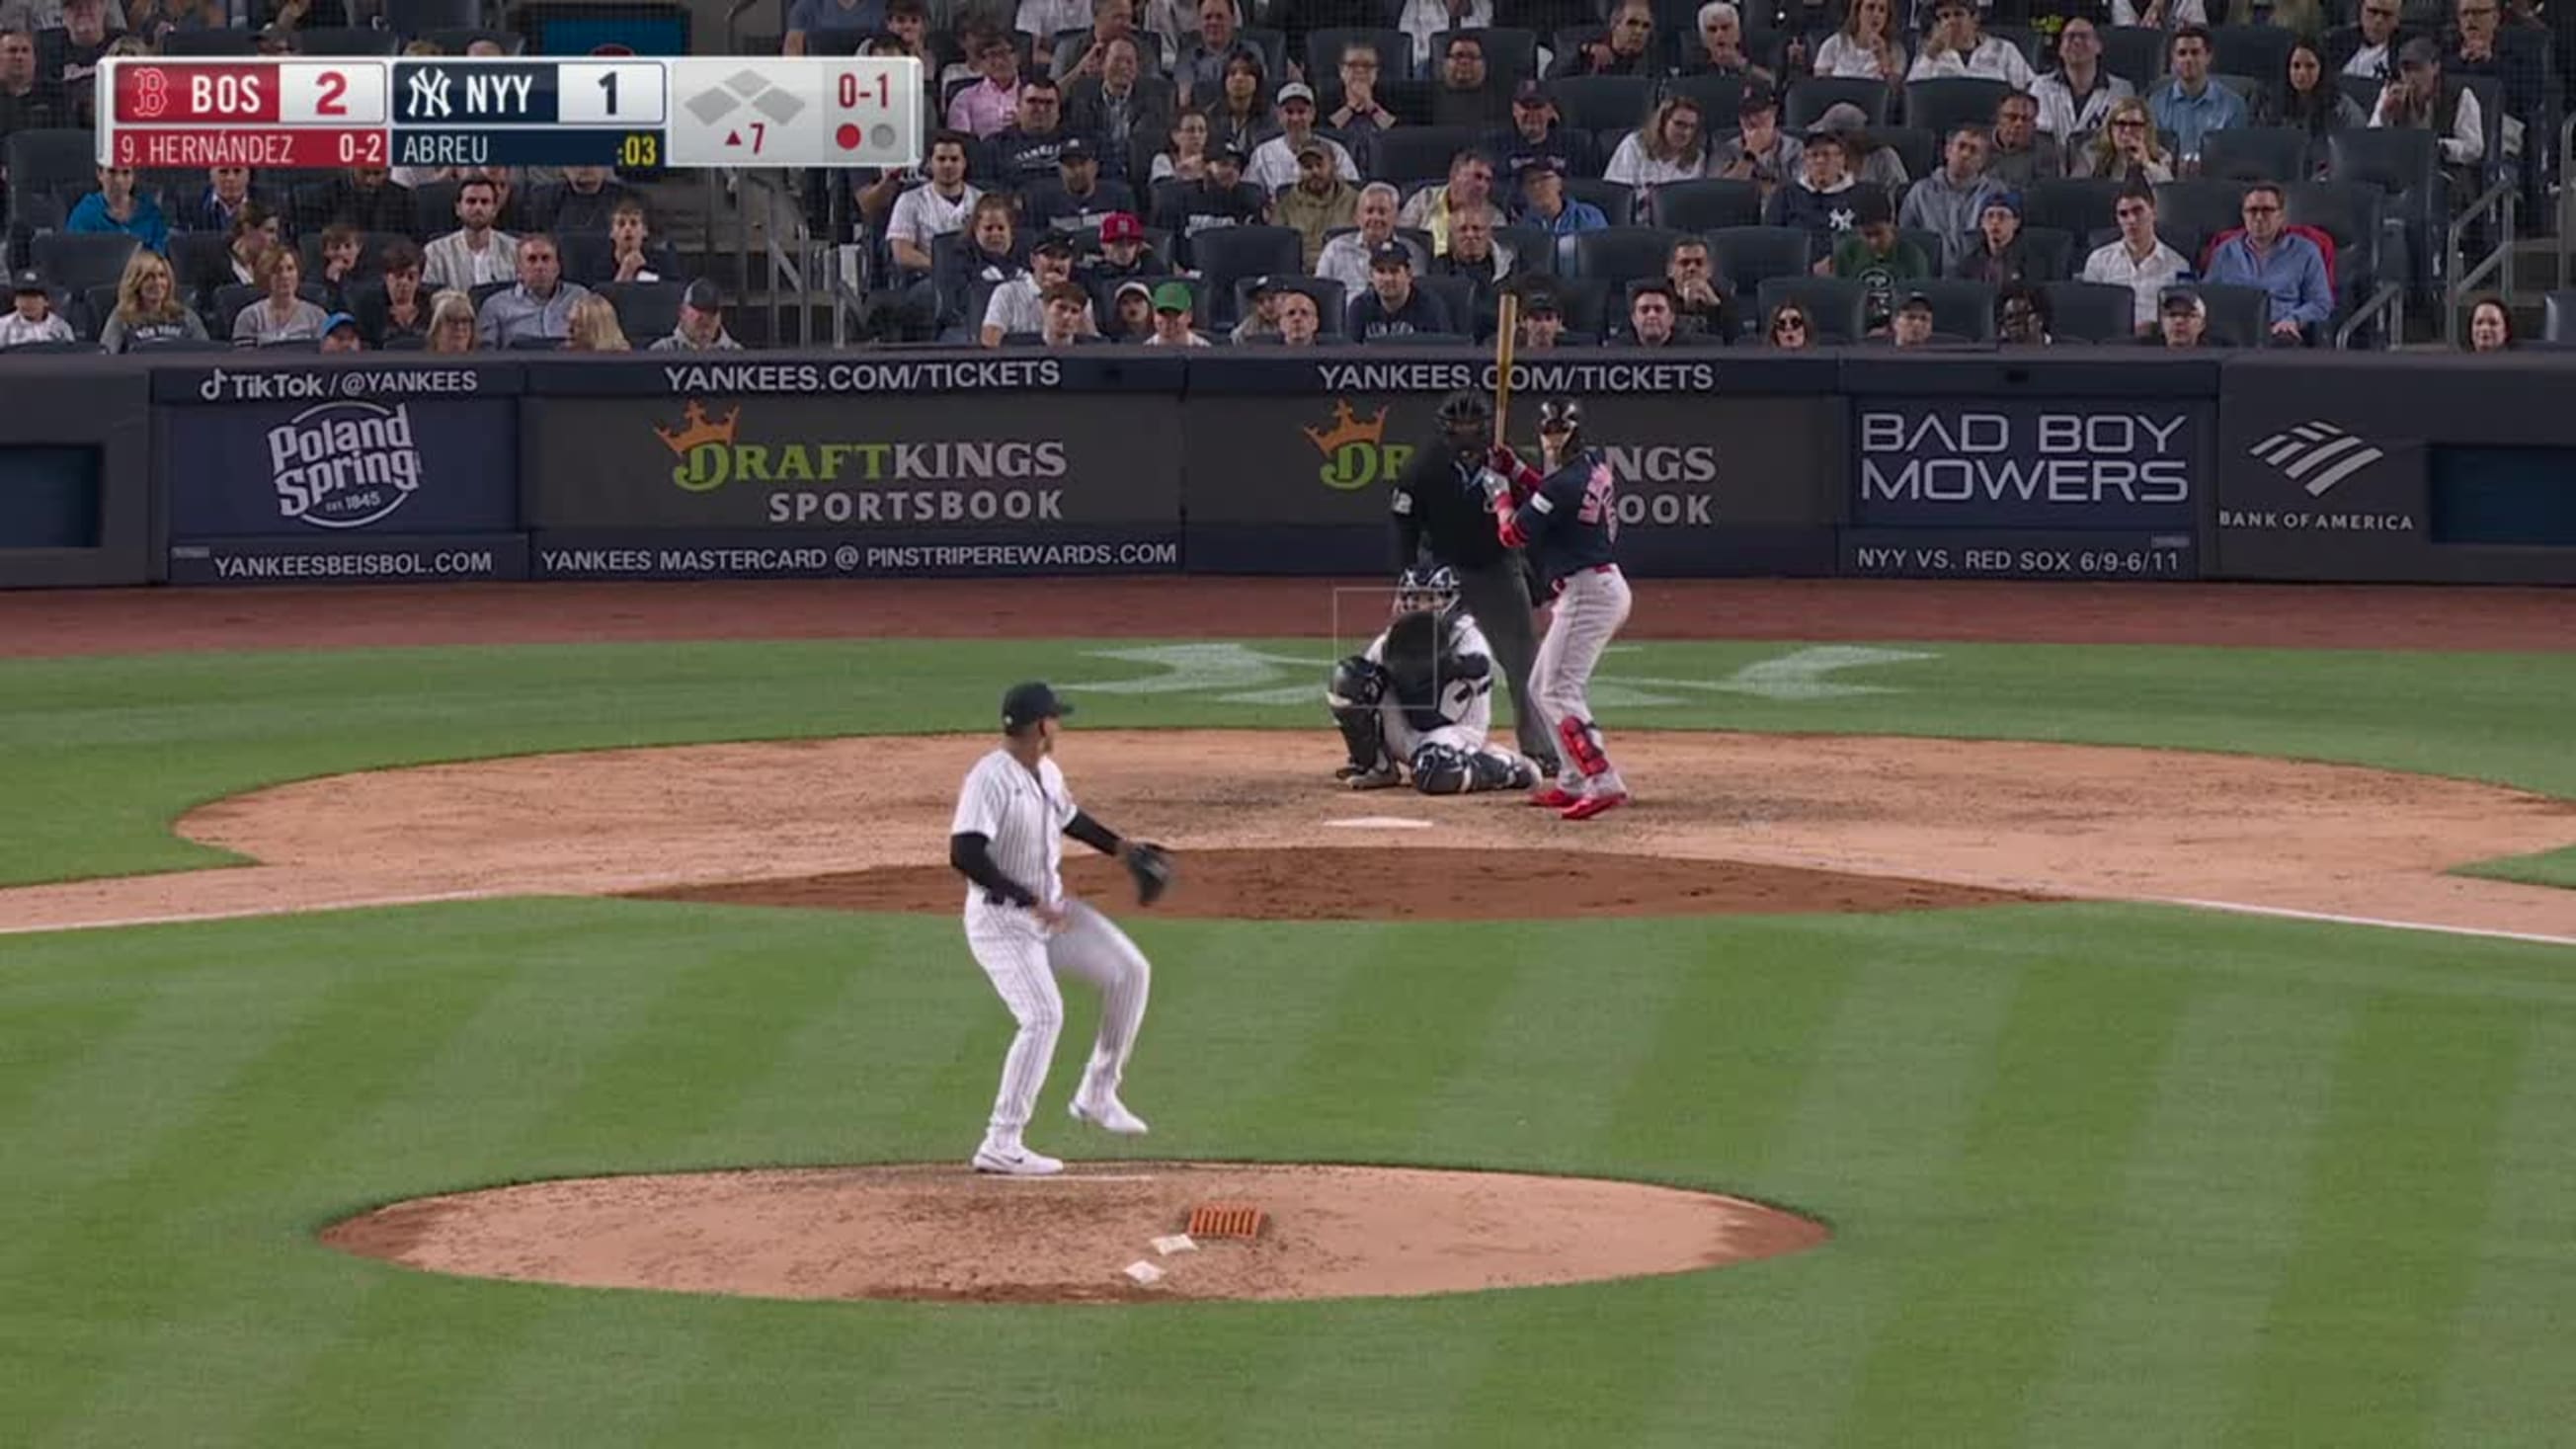 Kiké Hernandez hits a homer on the first pitch vs. Yankees (Video)